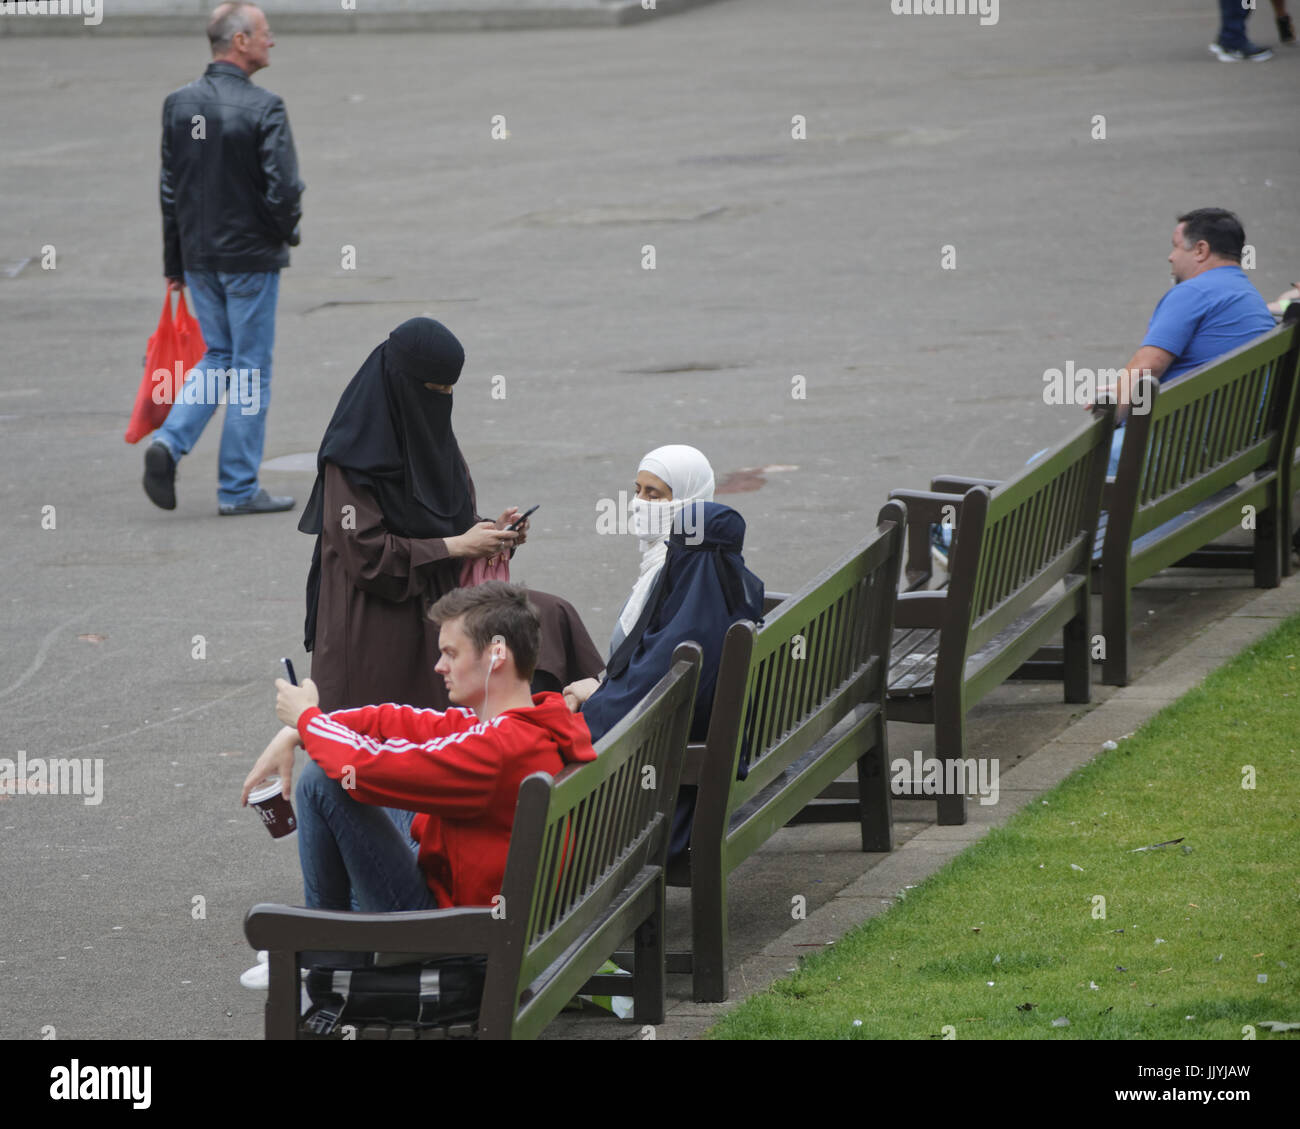 Asiatische Flüchtling gekleidet Hijab Schal auf George Square Glasgow Straße in der UK alltägliche Szene Stockfoto